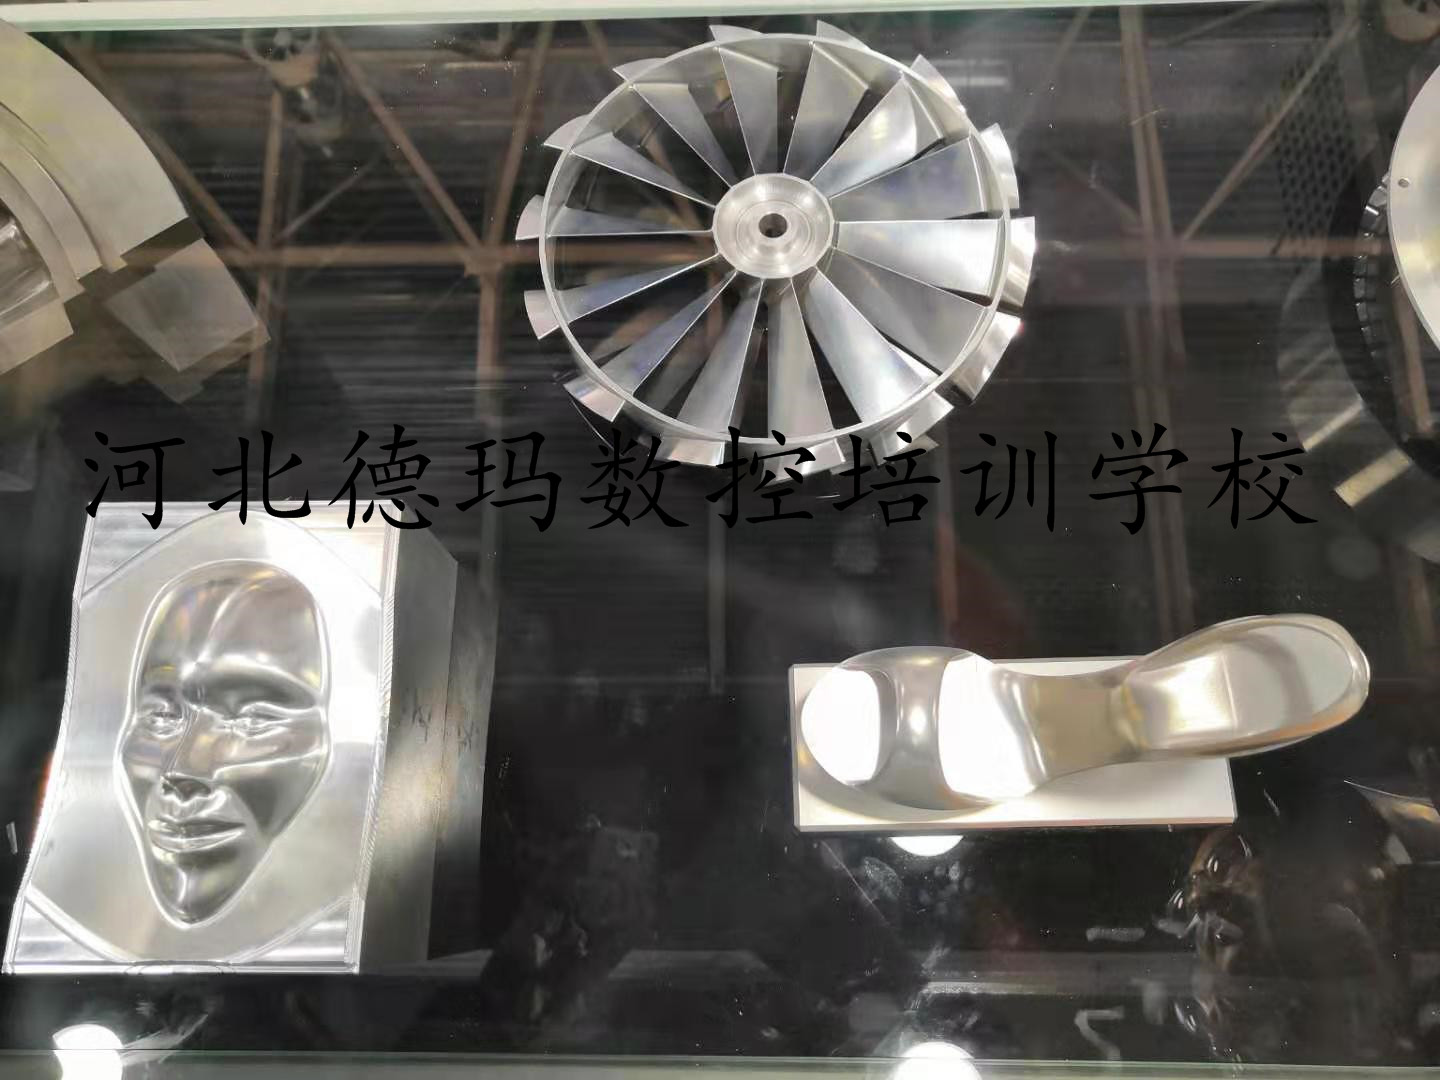 北京cnc模具设计培训多长时间 老师技术水平高